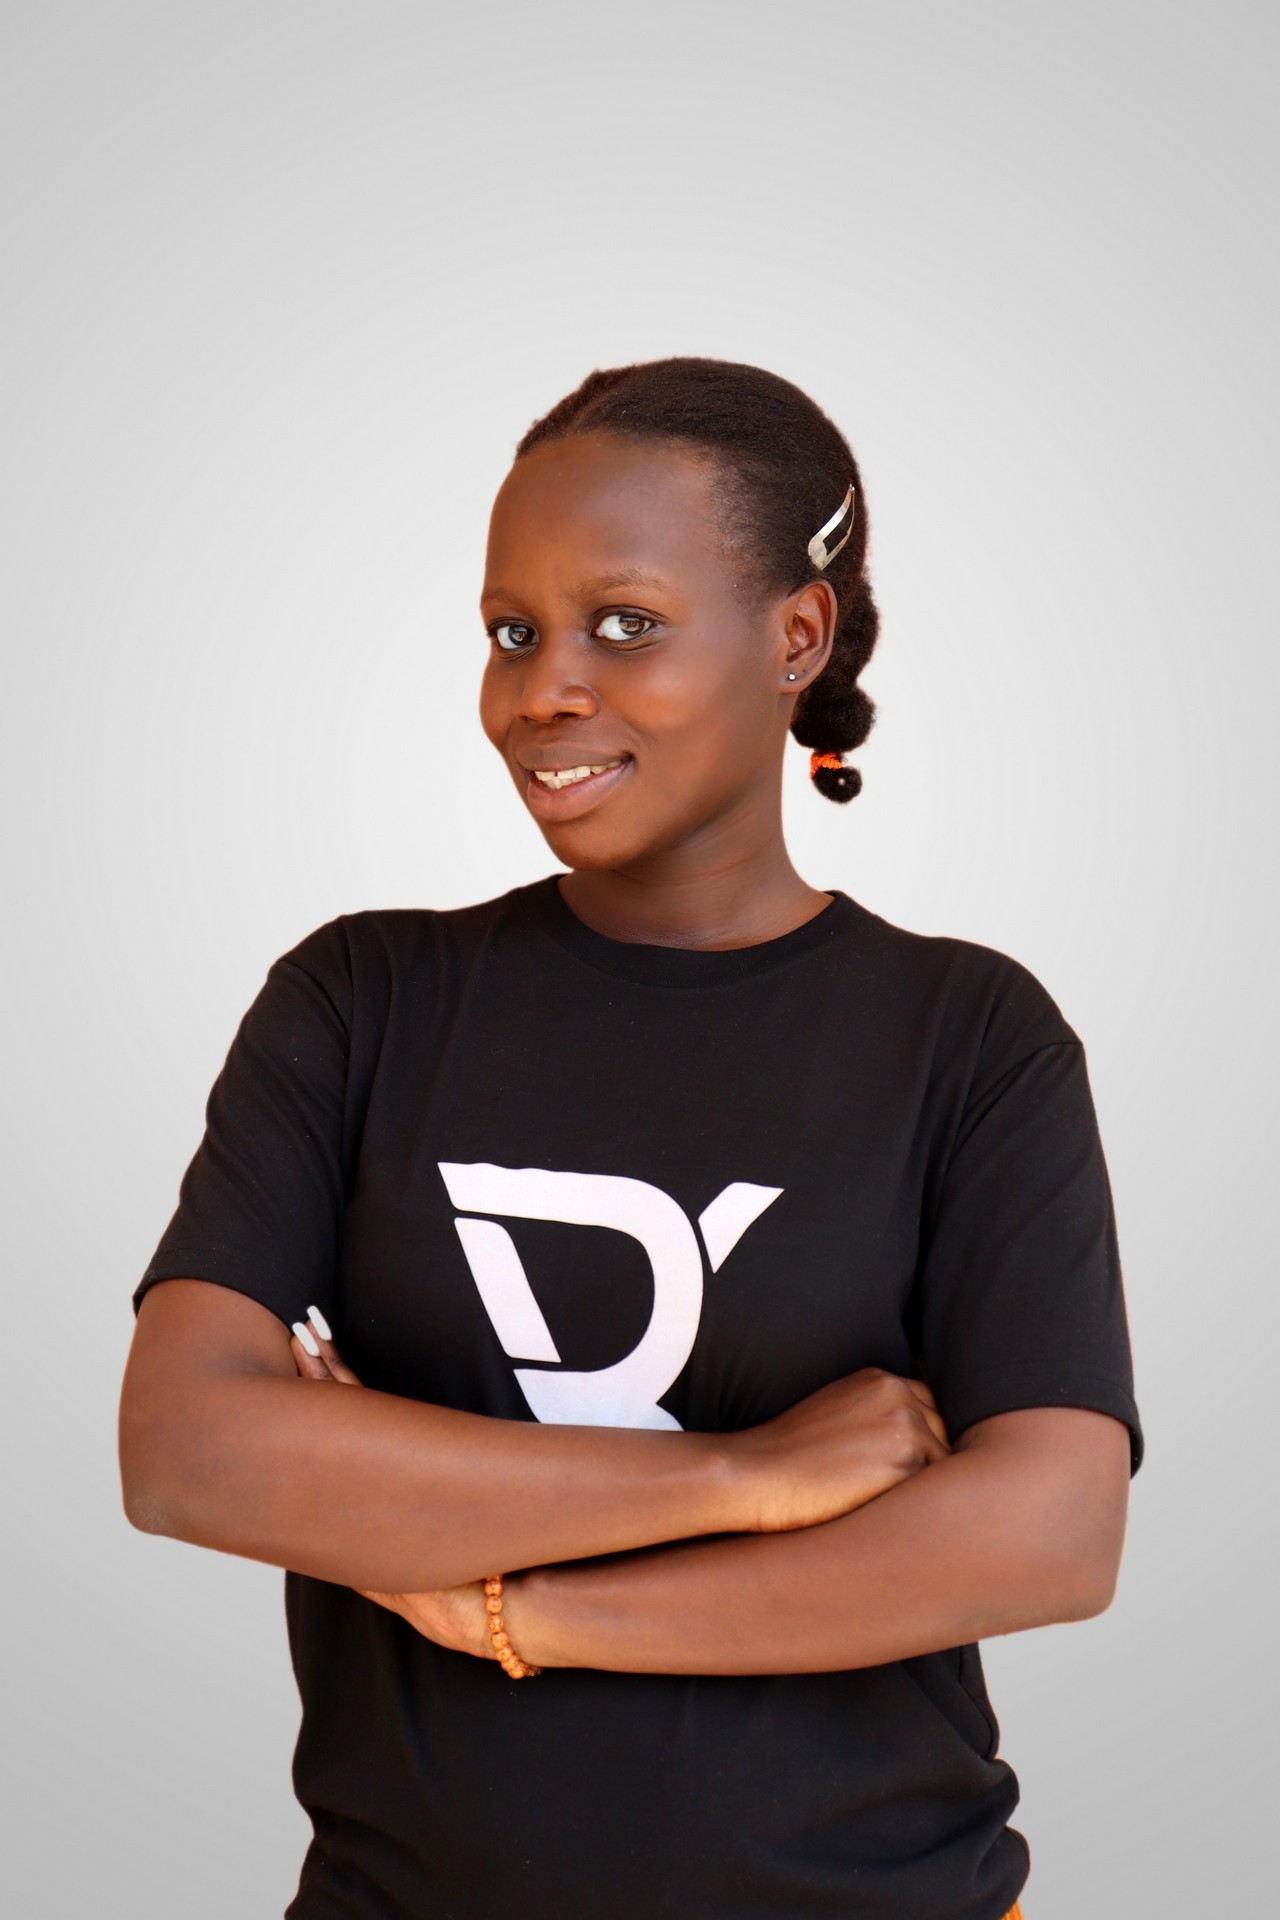 Ndayishimiye V. Diane